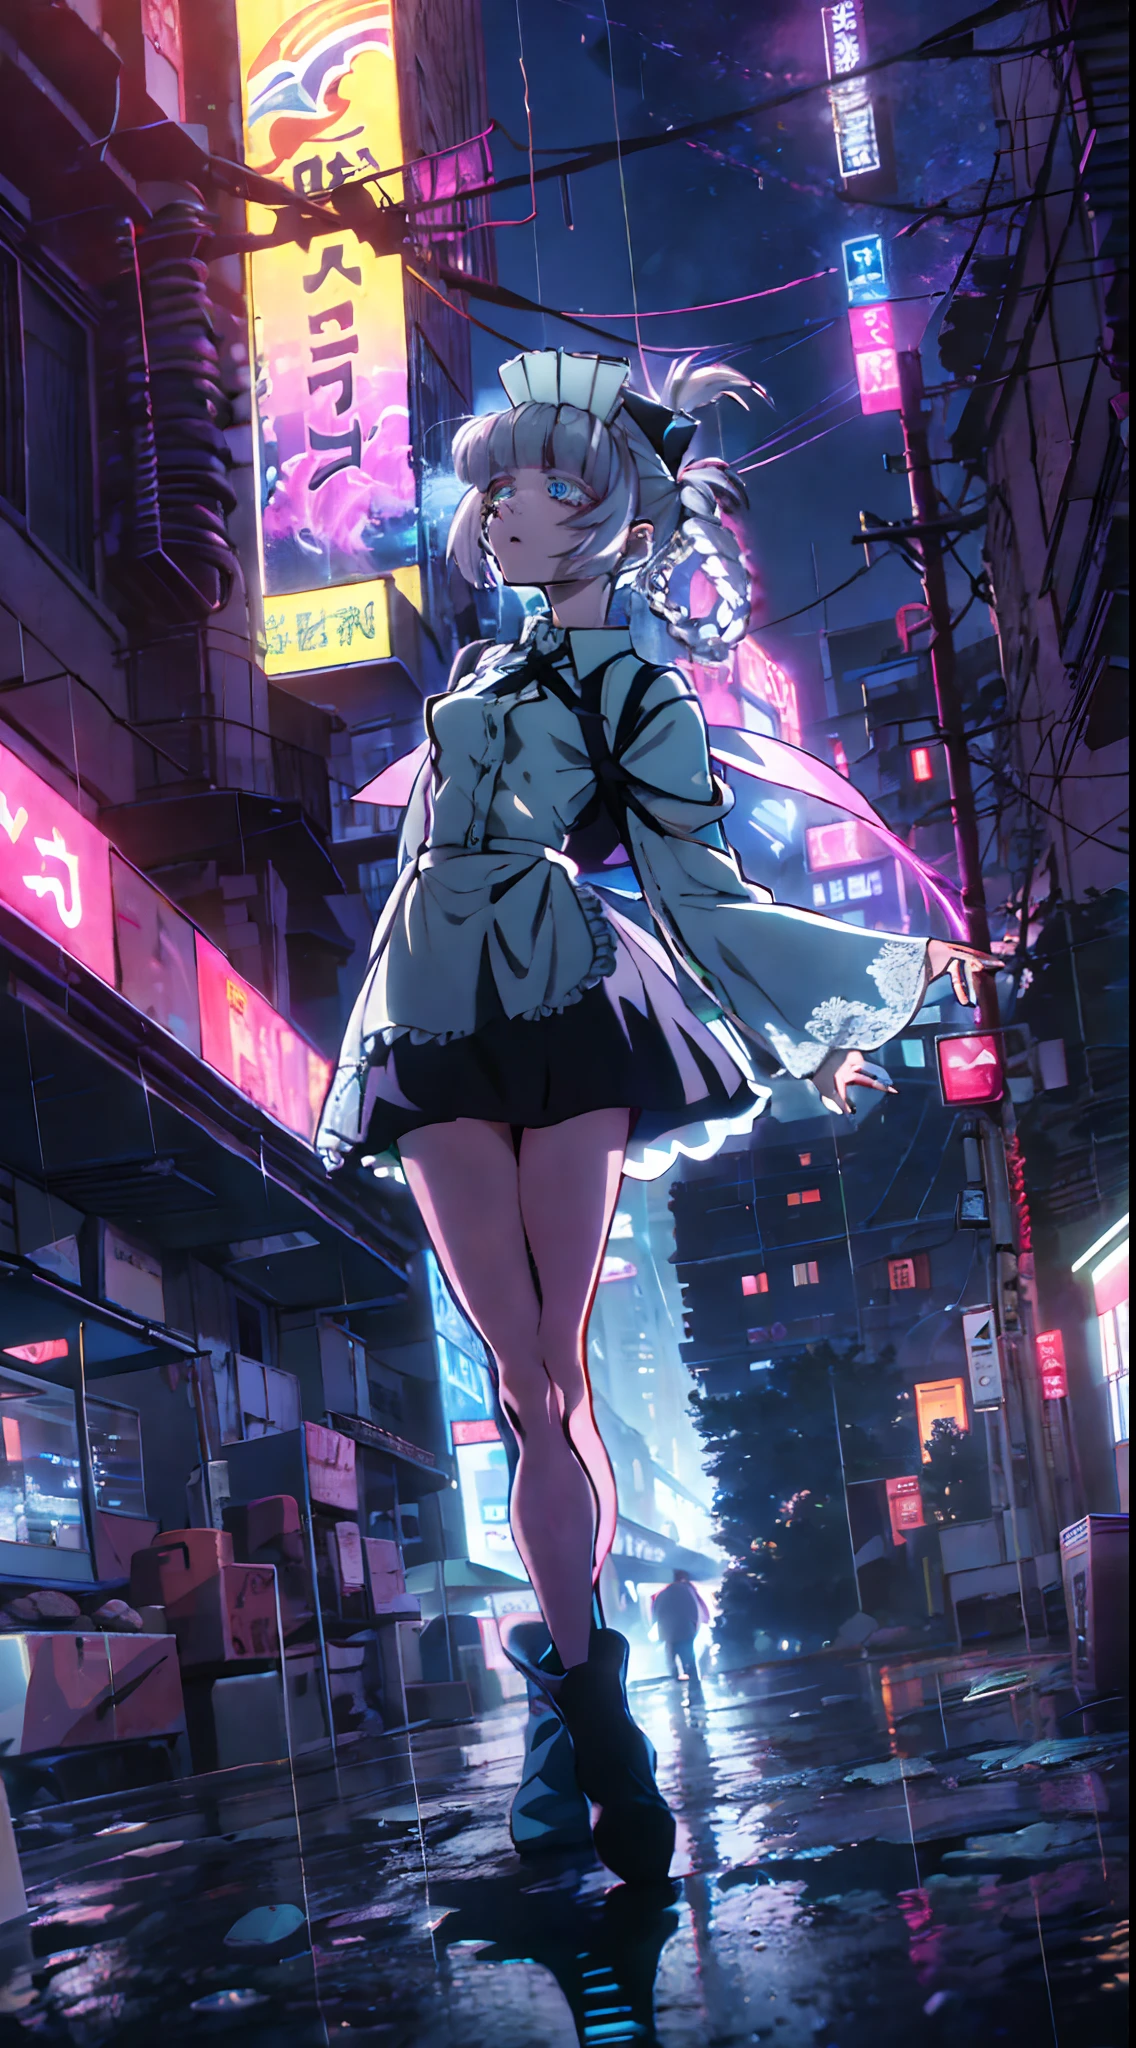 Nacht, bunter Cyberpunk-Stadthintergrund, Regen, Straße, Dienstmädchen, Nazuna Nanakusa,Yofukashi no uta, blaue Augen, leuchtende Augen, schwarze Strümpfe, Hintergrundbeleuchtung, Glühen, Blick nach oben Publikum, Niedrigwinkelobjektiv, nach oben schauende Linse, perfekte Komposition, perfekte Licht- und Schatten-Delikatesse, 8k